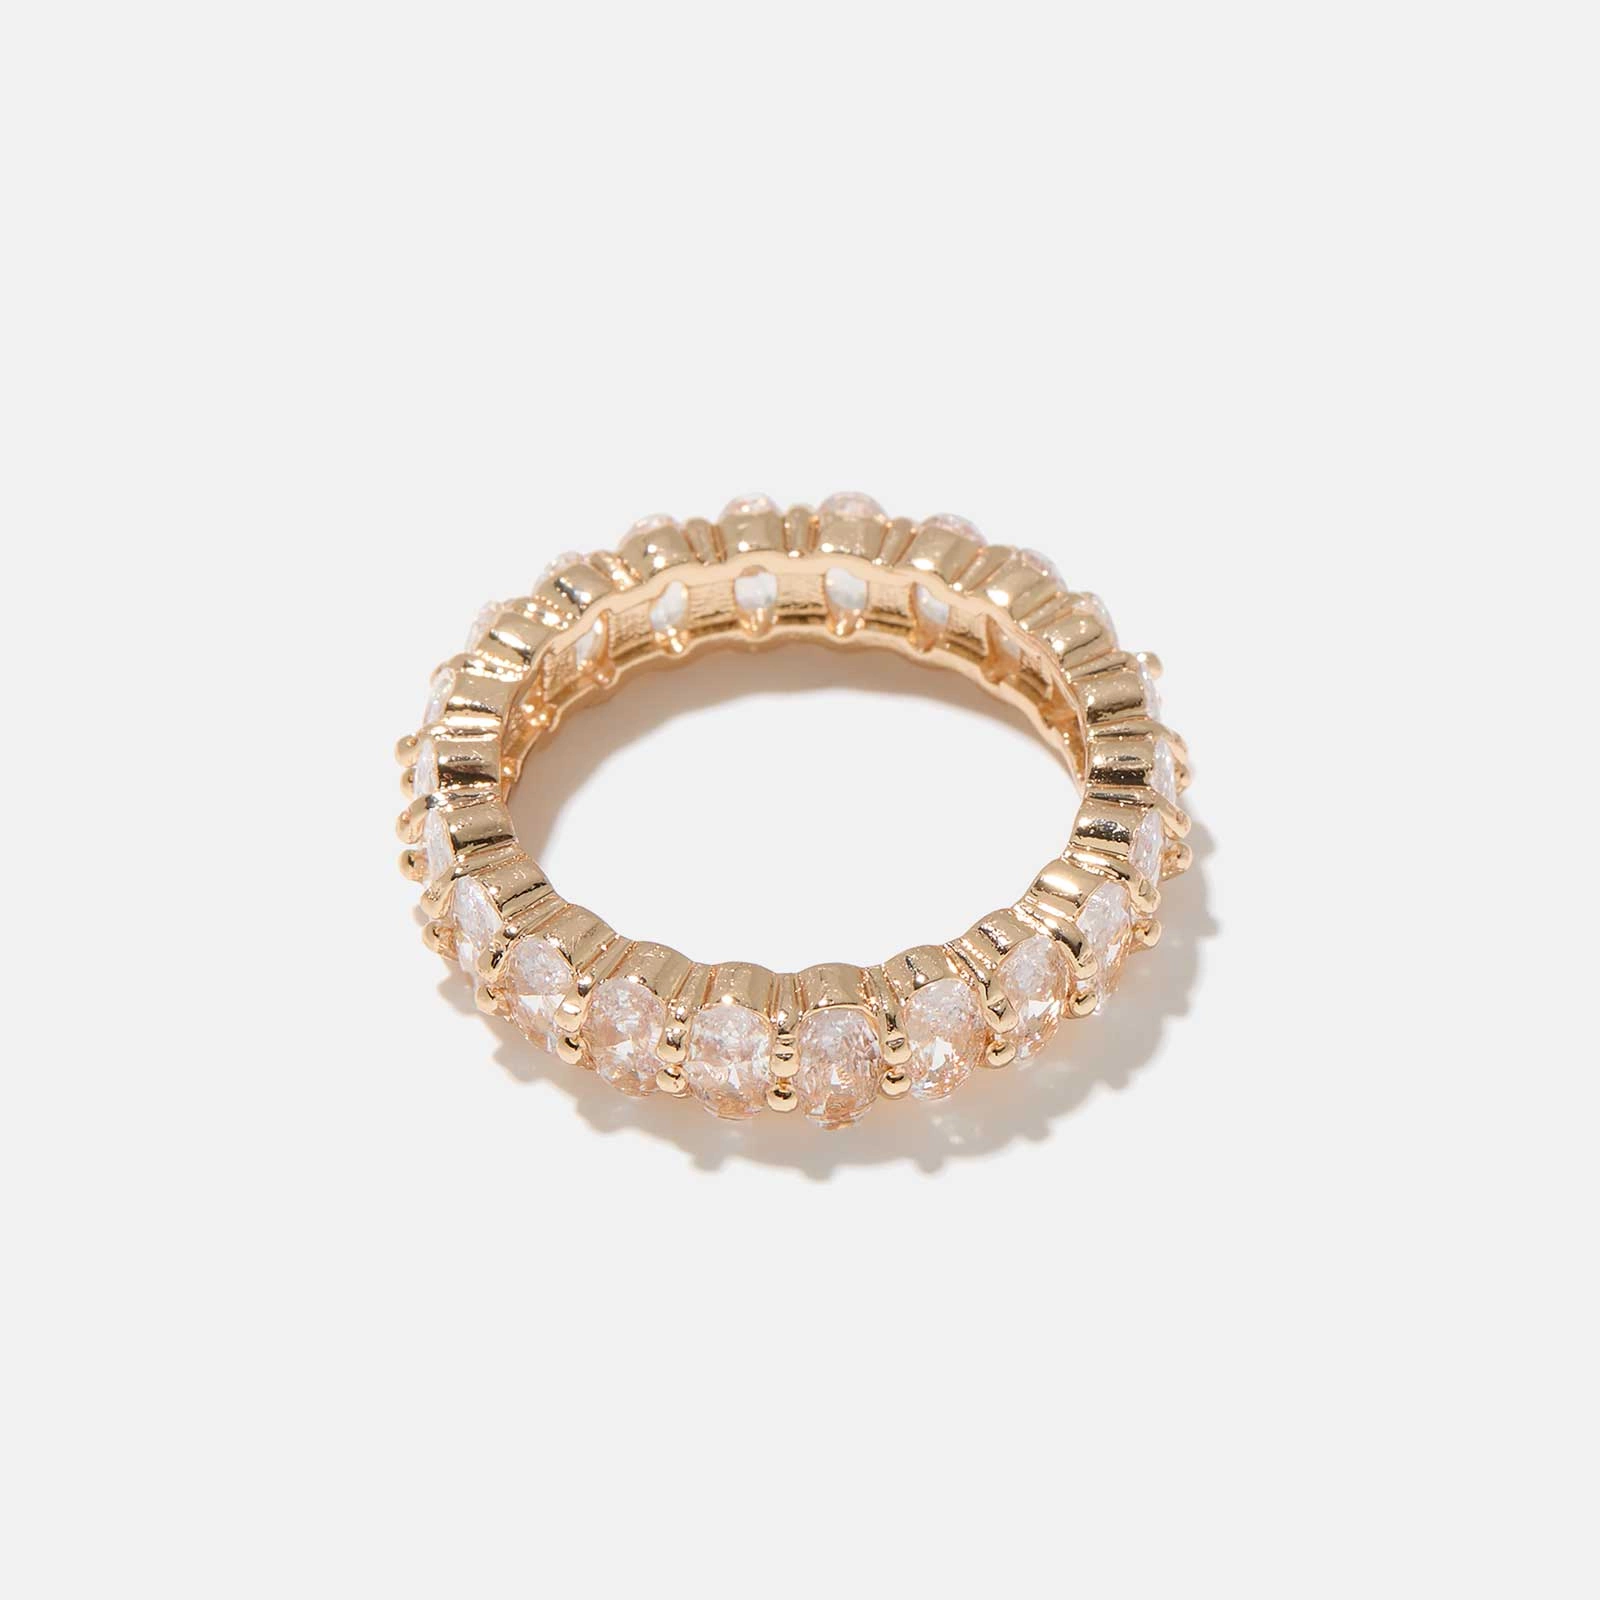 Guldfärgad ring fylld med vita stenar